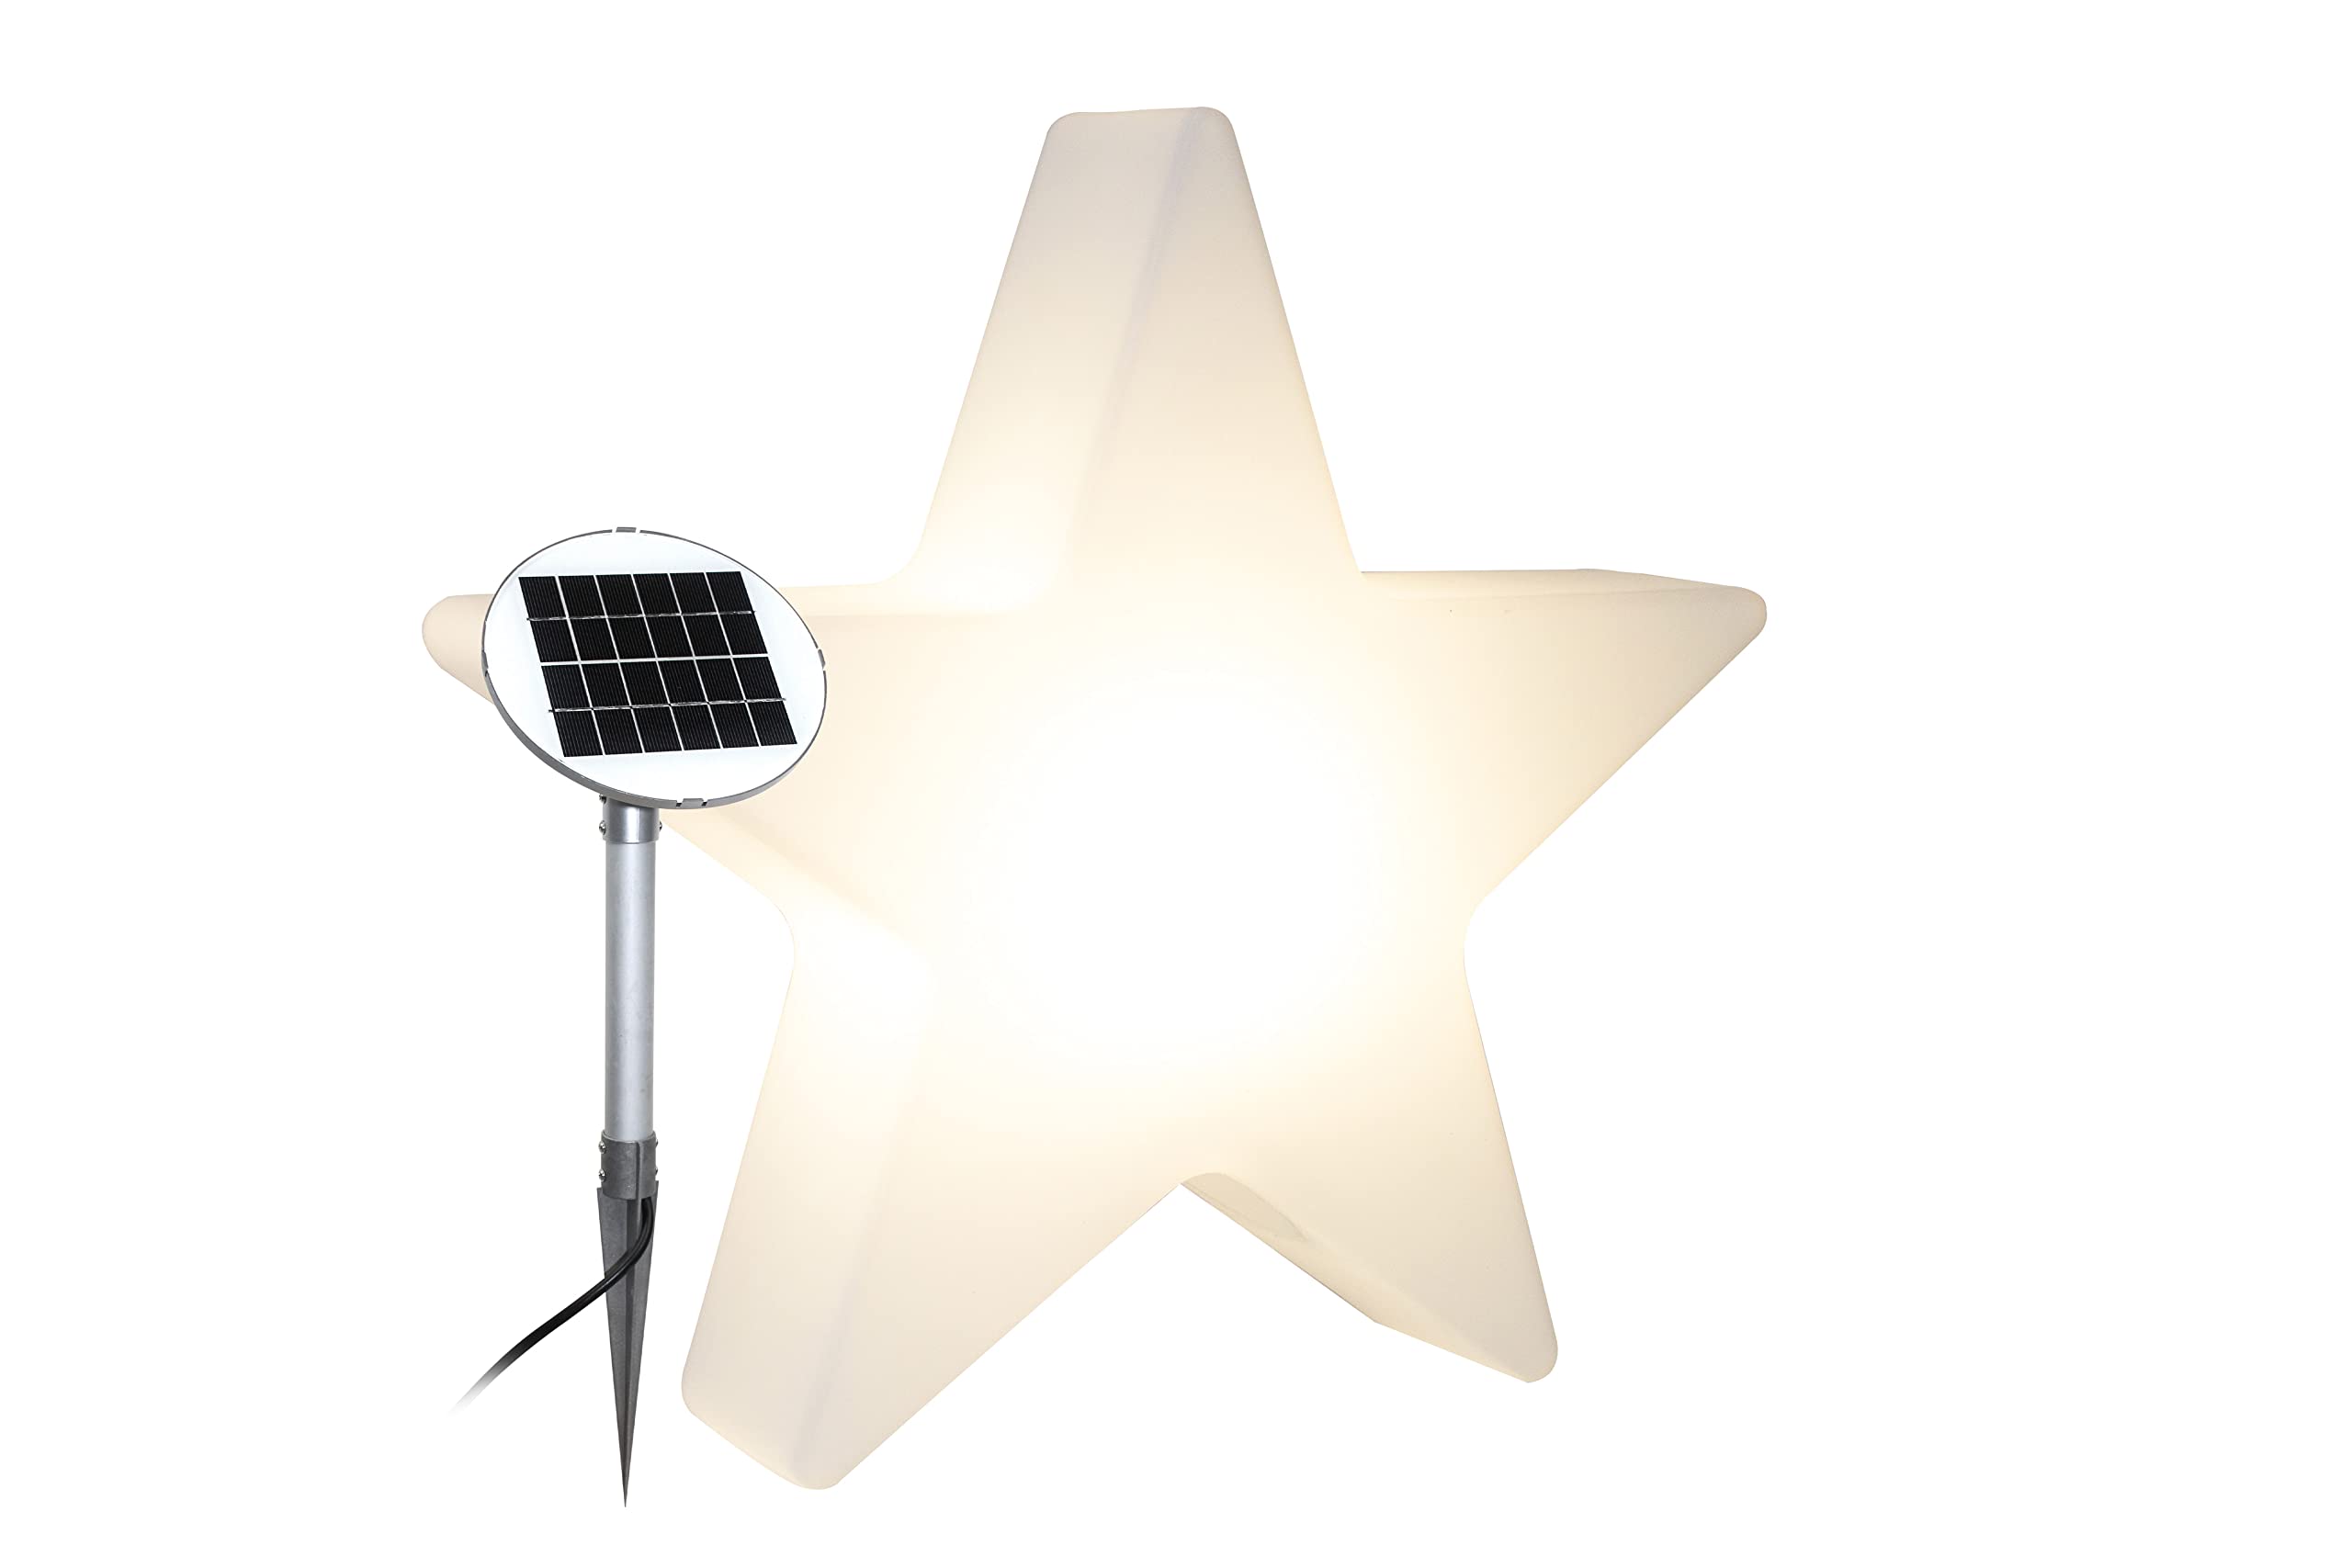 8 seasons design Shining Star "Merry Christmas" Solar LED Weihnachtsstern Ø 60 cm (Weiß), inkl. Solarmodul und LED-Leuchtmittel, beleuchteter Stern mit geprägtem Weihnachtsmotiv, Solarleuchte